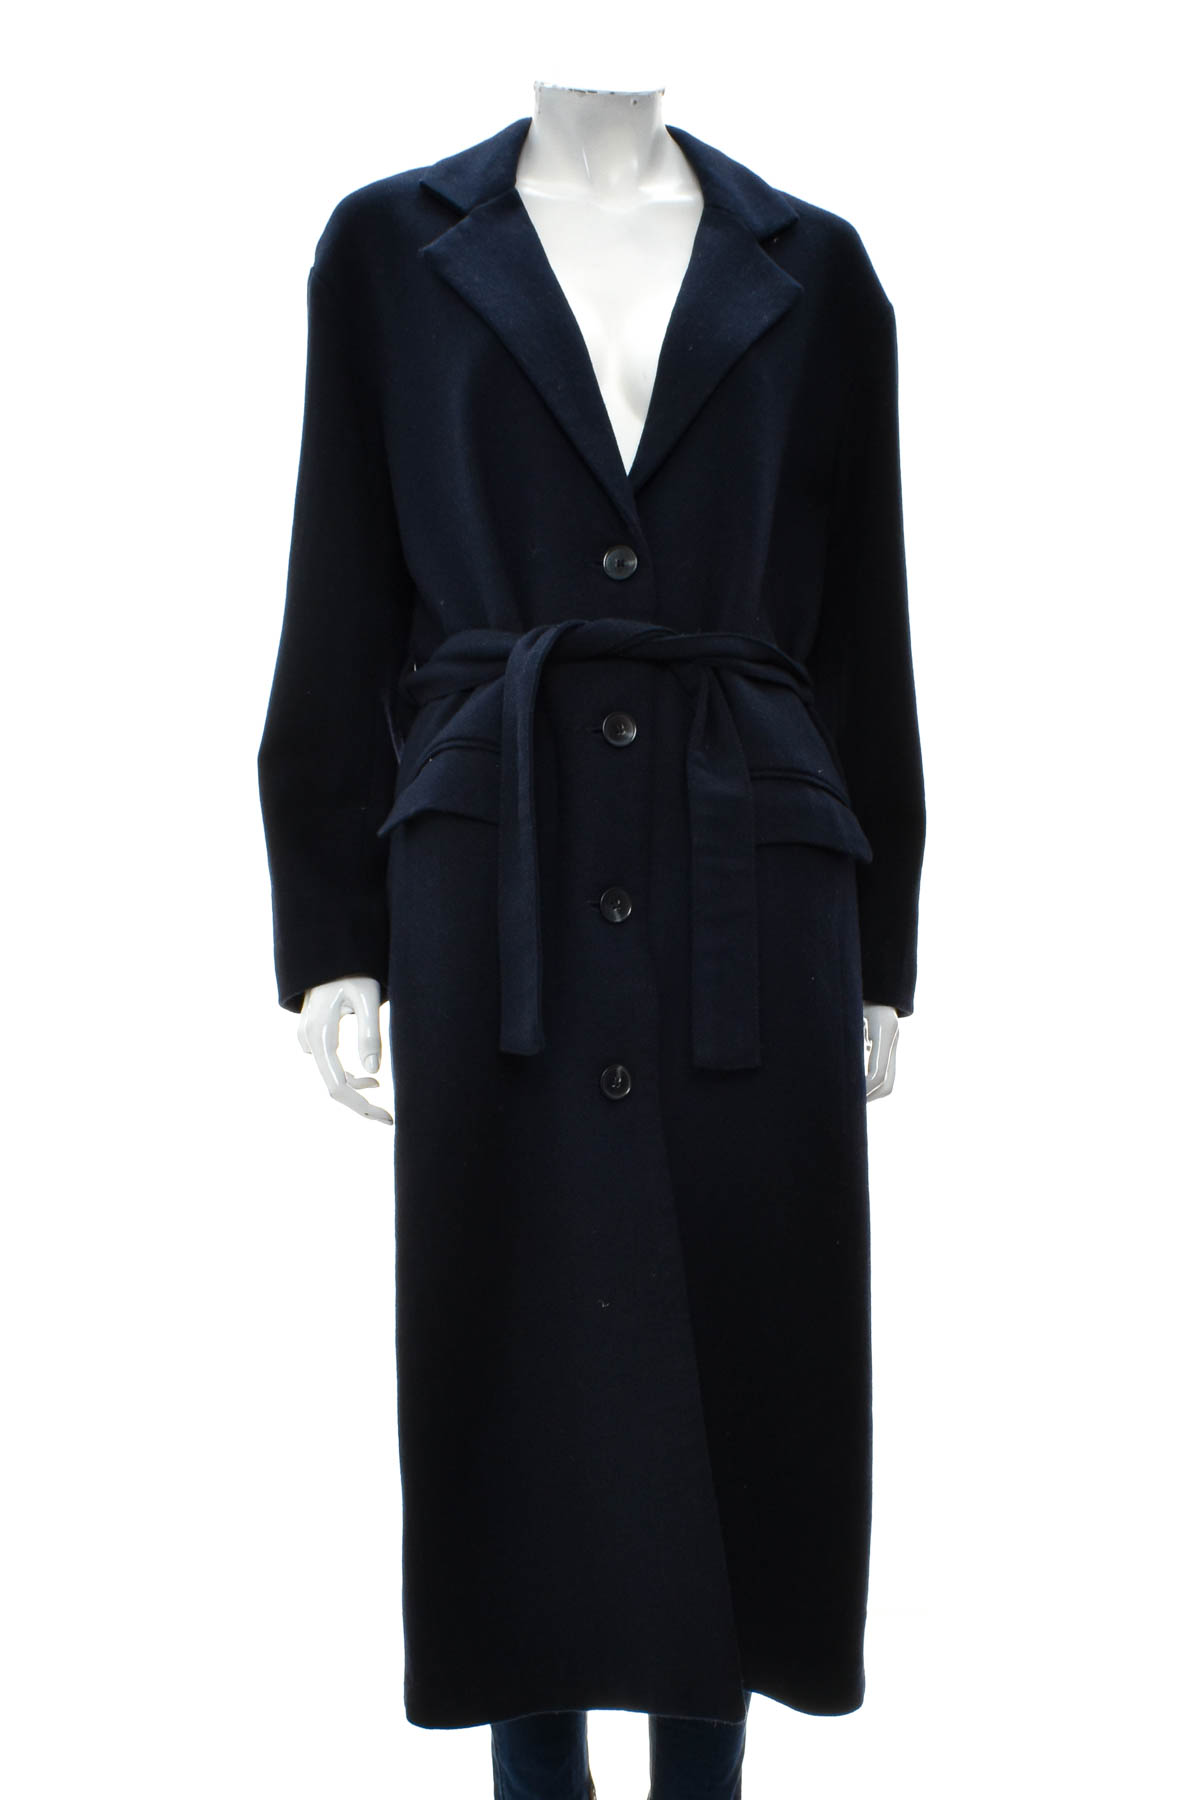 Γυναικείο παλτό - Levi Strauss & Co. - 0